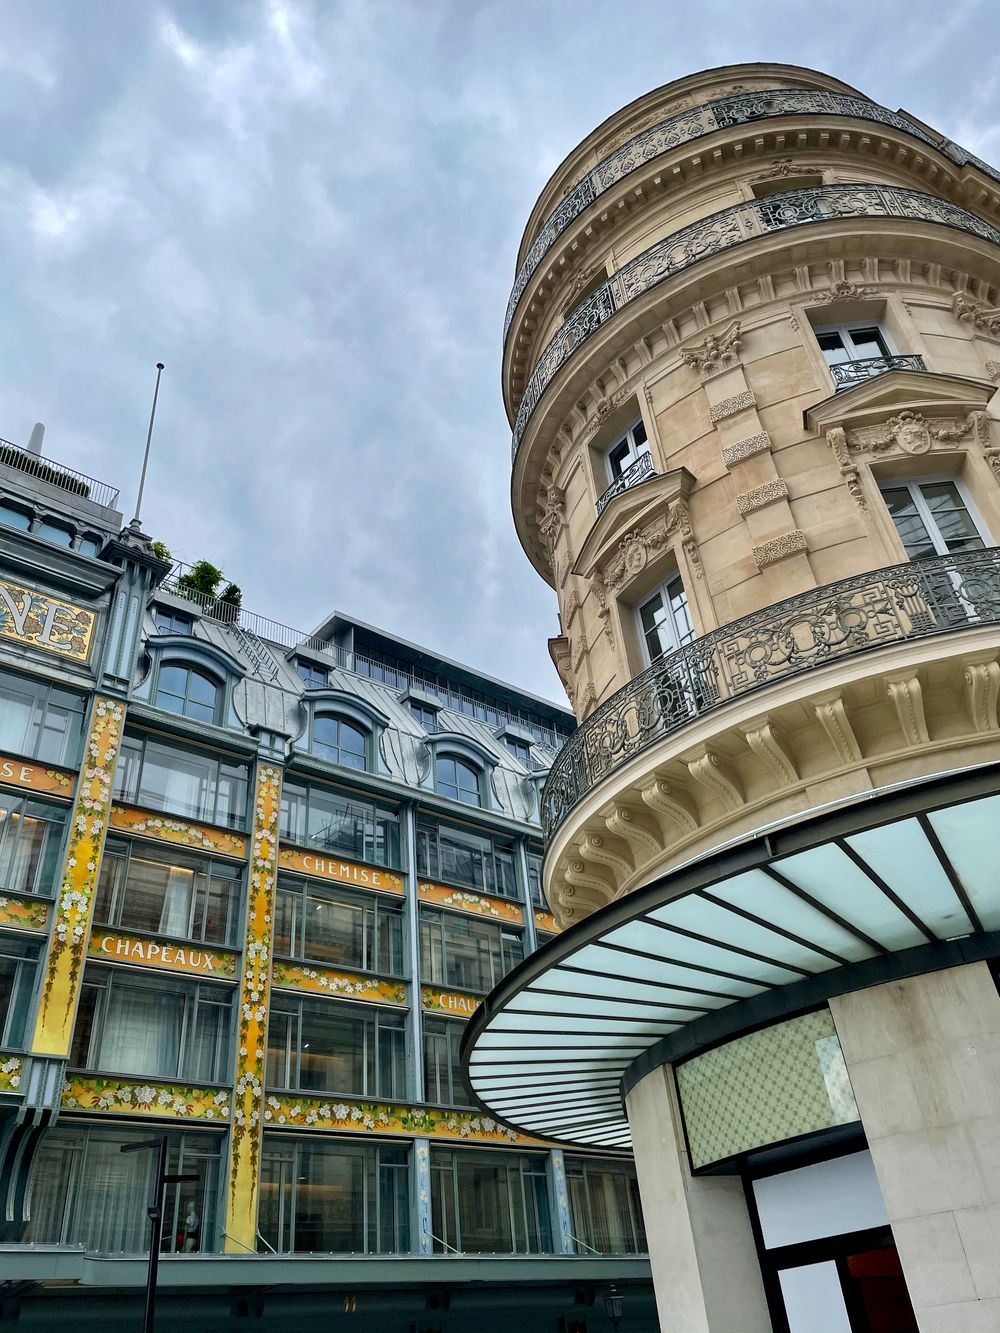 La Samaritaine Paris department store